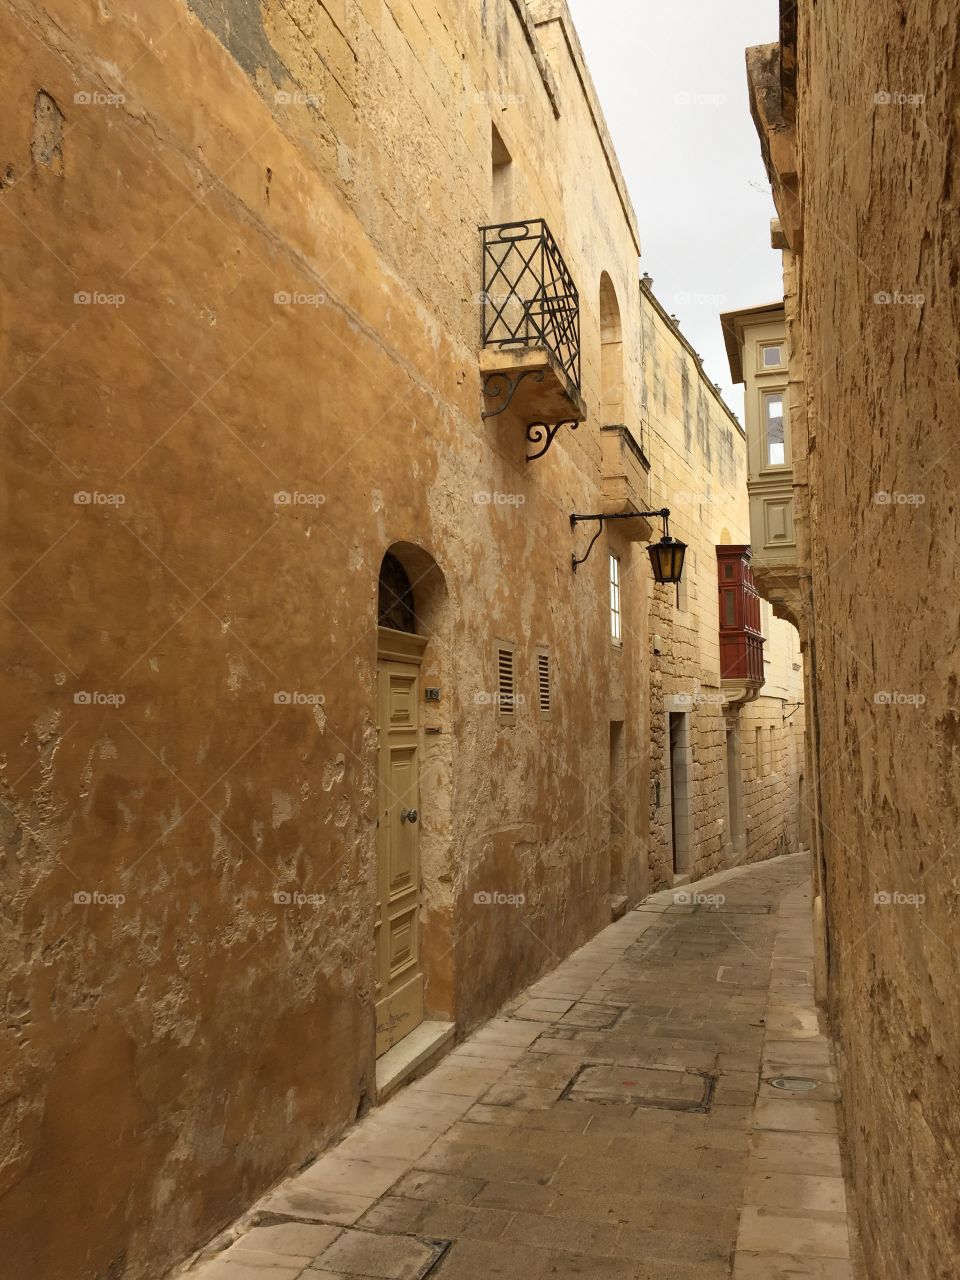 Limestone streets in Malta 